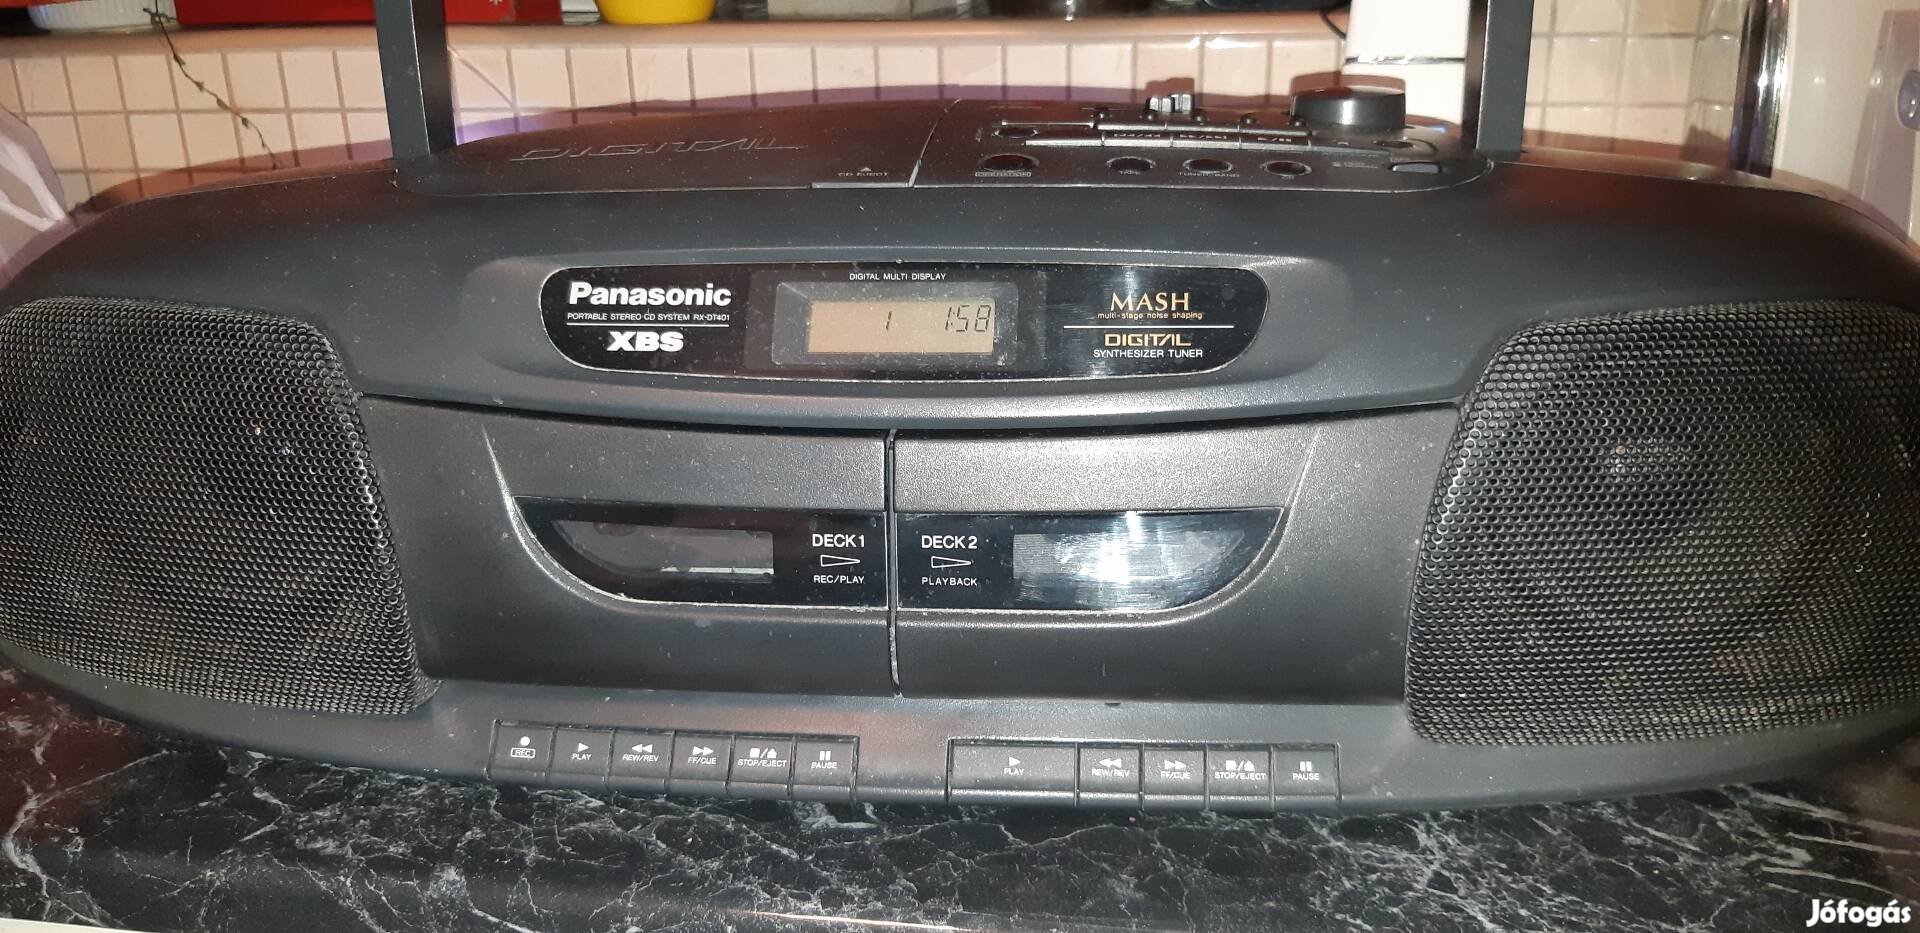 Eladó Panasonic boombox rádiósmagnó cd